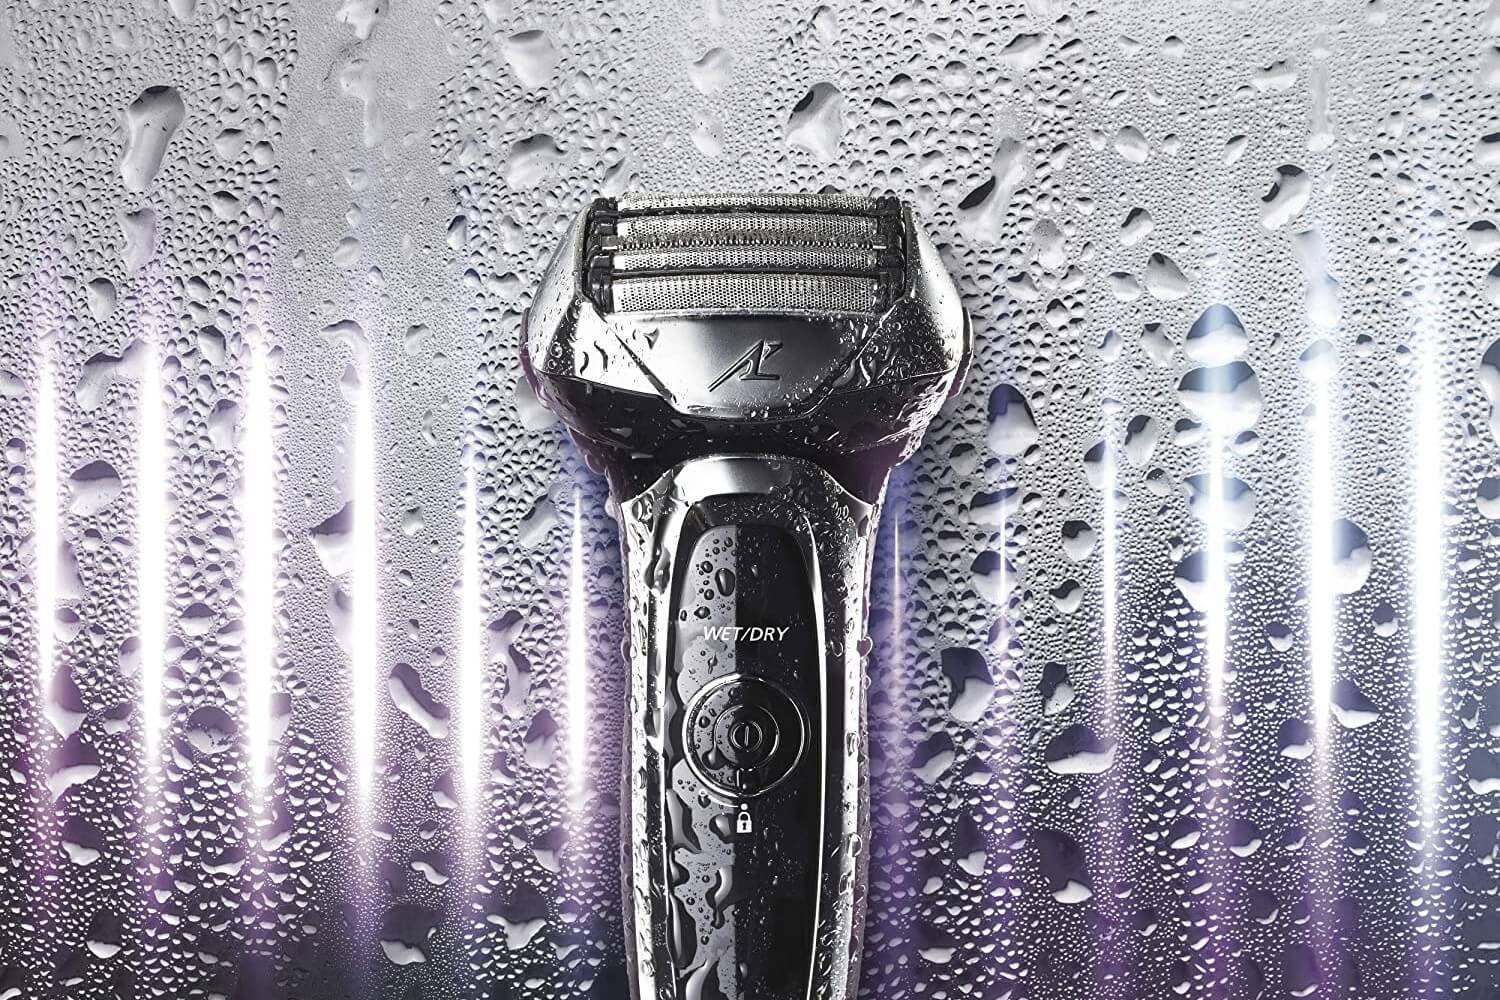 wet and dry razor